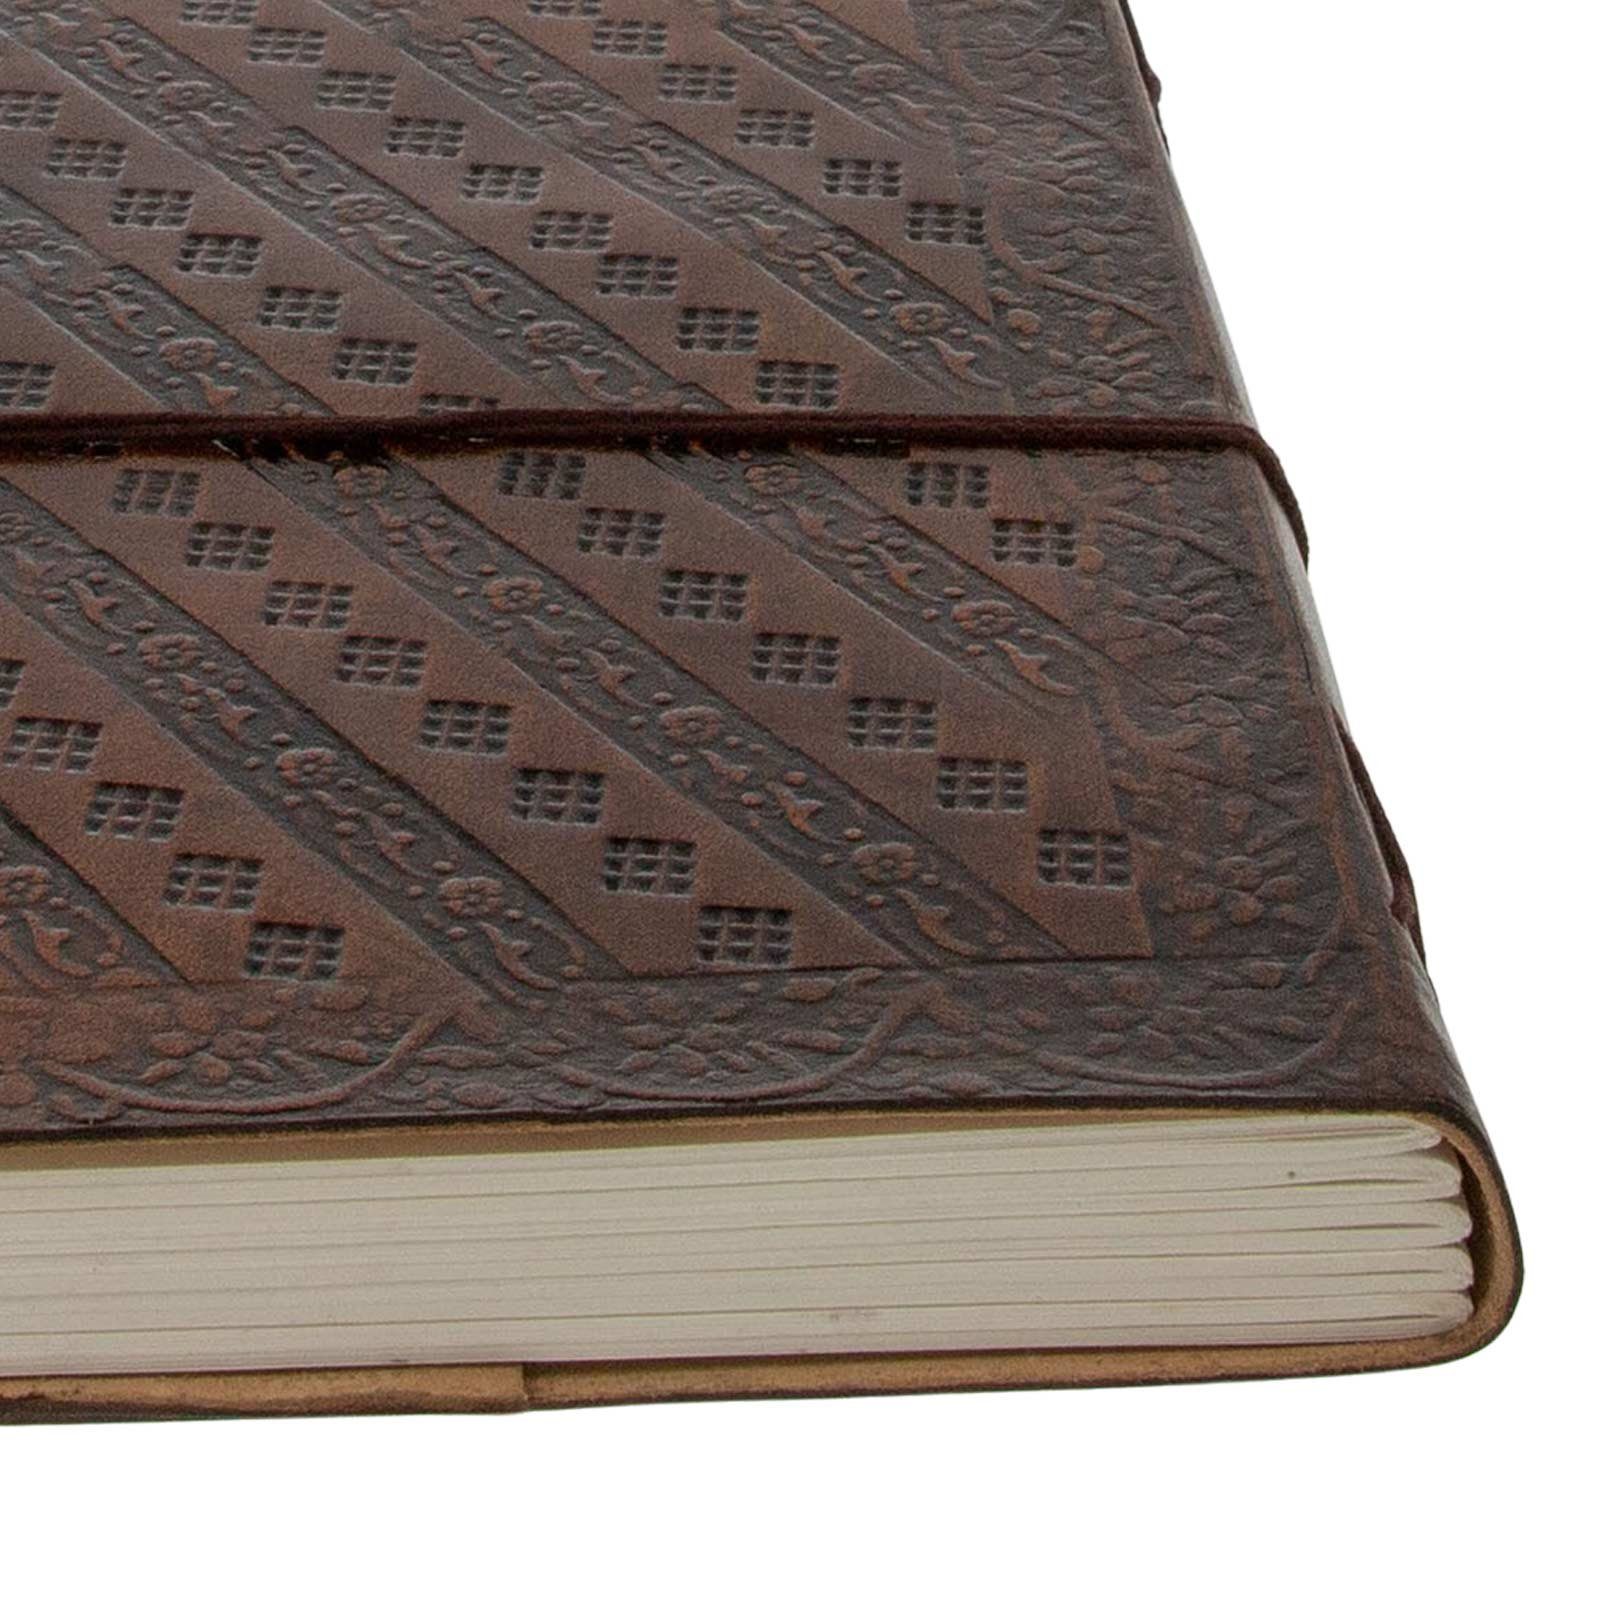 UND MAGIE Notizbuch Tagebuch Leder Göttin Mondgöttin Wicca Tagebuch Große KUNST 15x11,5cm